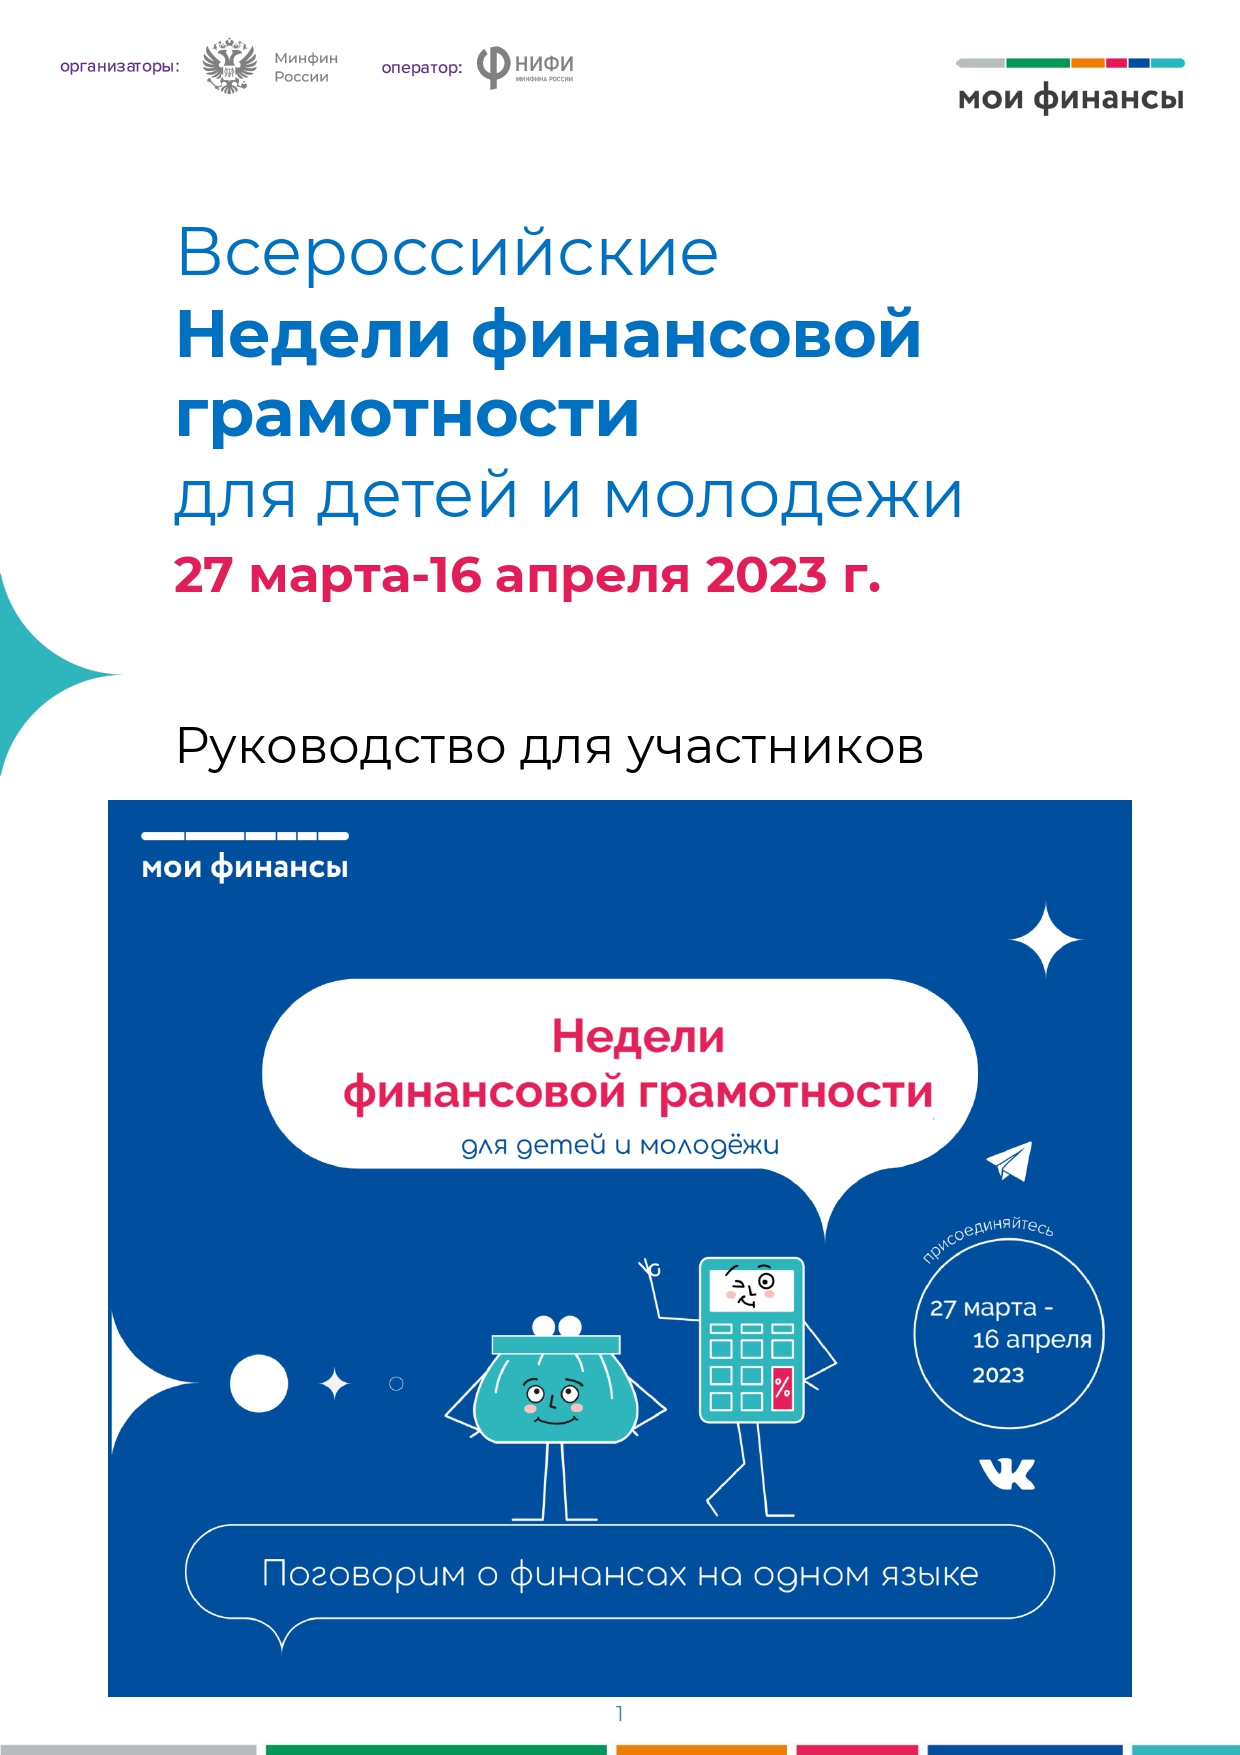 Всероссийские Недели финансовой грамотности для детей и молодежи